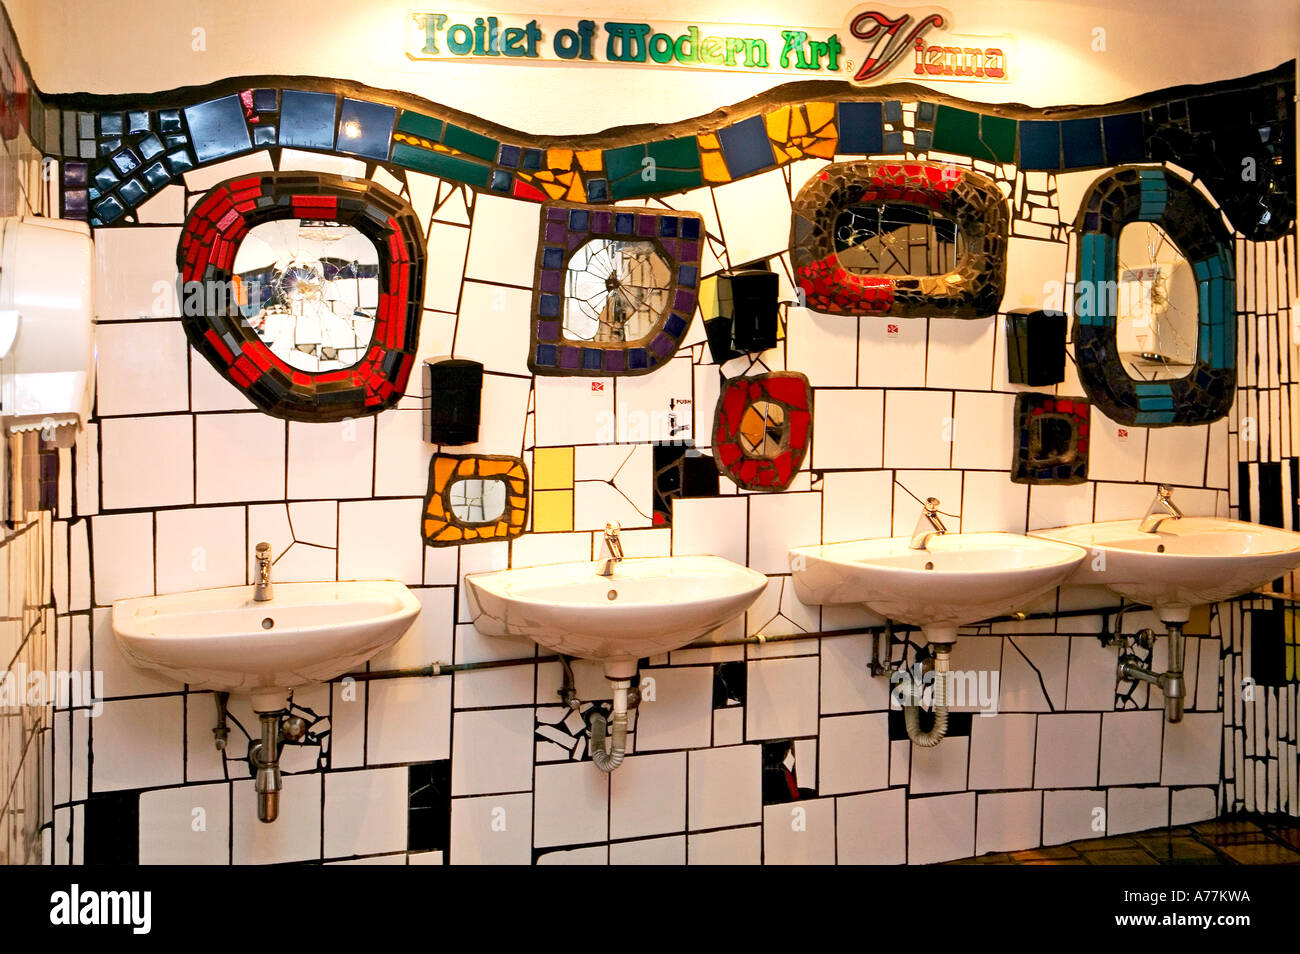 Toilet art -Fotos und -Bildmaterial in hoher Auflösung – Alamy